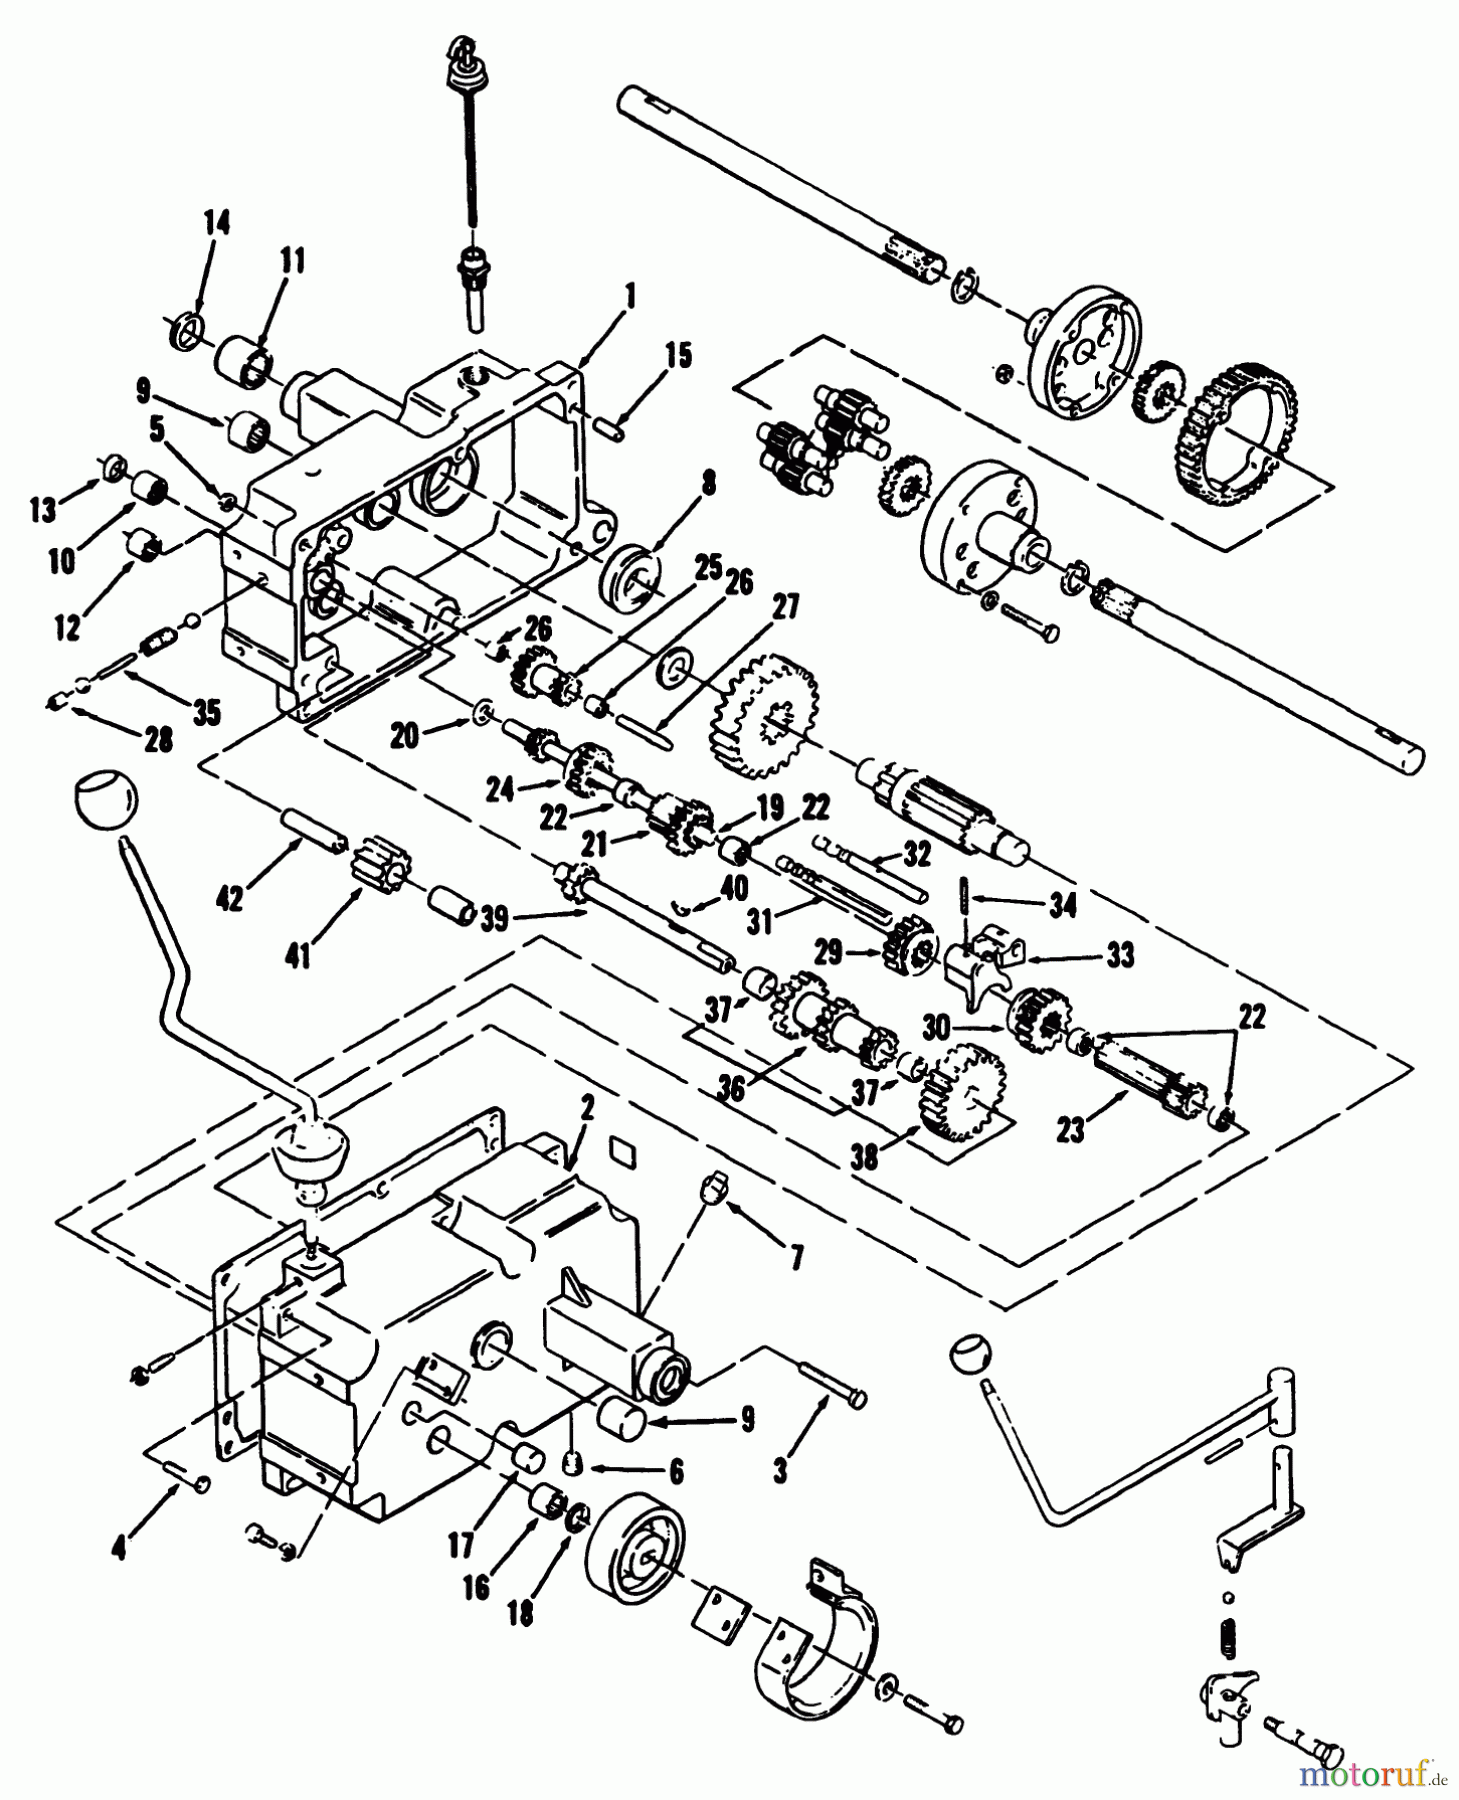  Toro Neu Mowers, Lawn & Garden Tractor Seite 2 R1-12K804 (312-8) - Toro 312-8 Garden Tractor, 1992 (2000001-2999999) MECHANICAL TRANSMISSION 8-SPEED #1